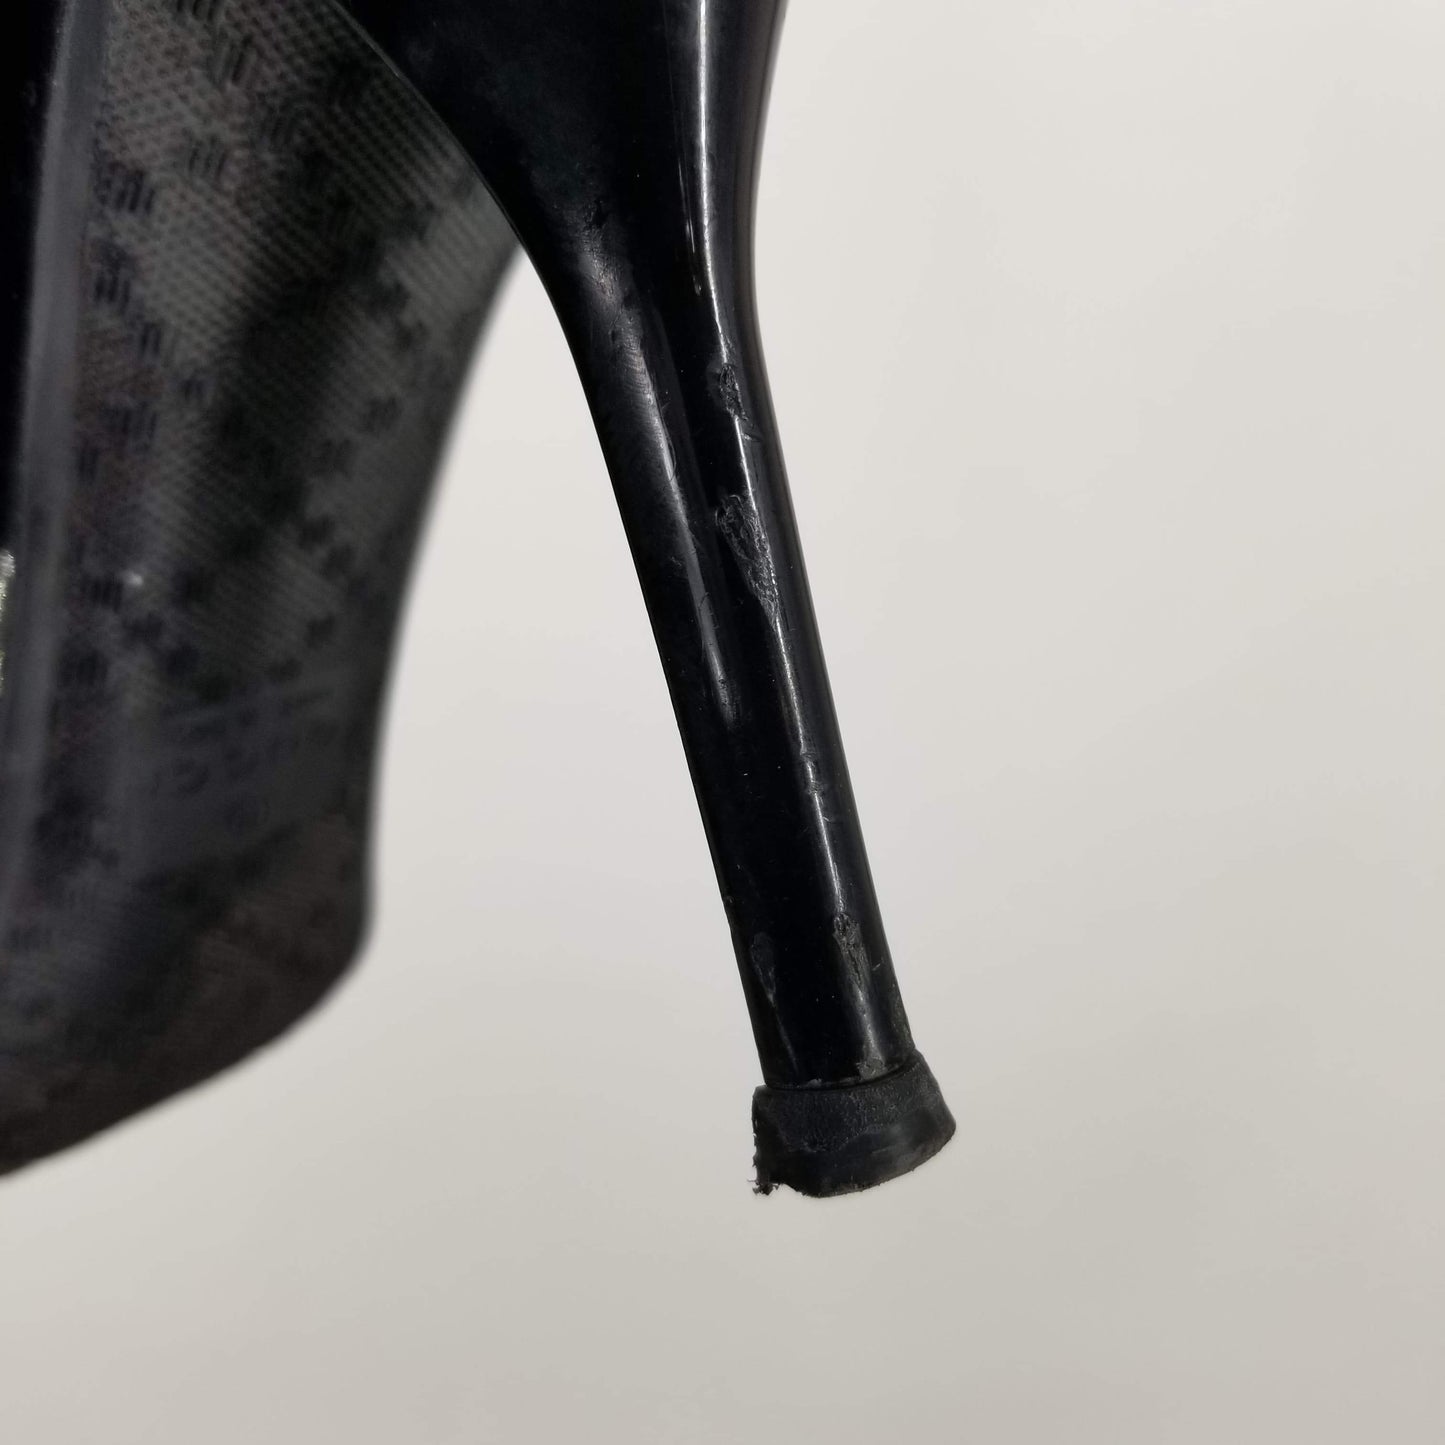 Authentic Gucci Plack Patent Almond Toe Pumps Women's Size 38-39 / 8